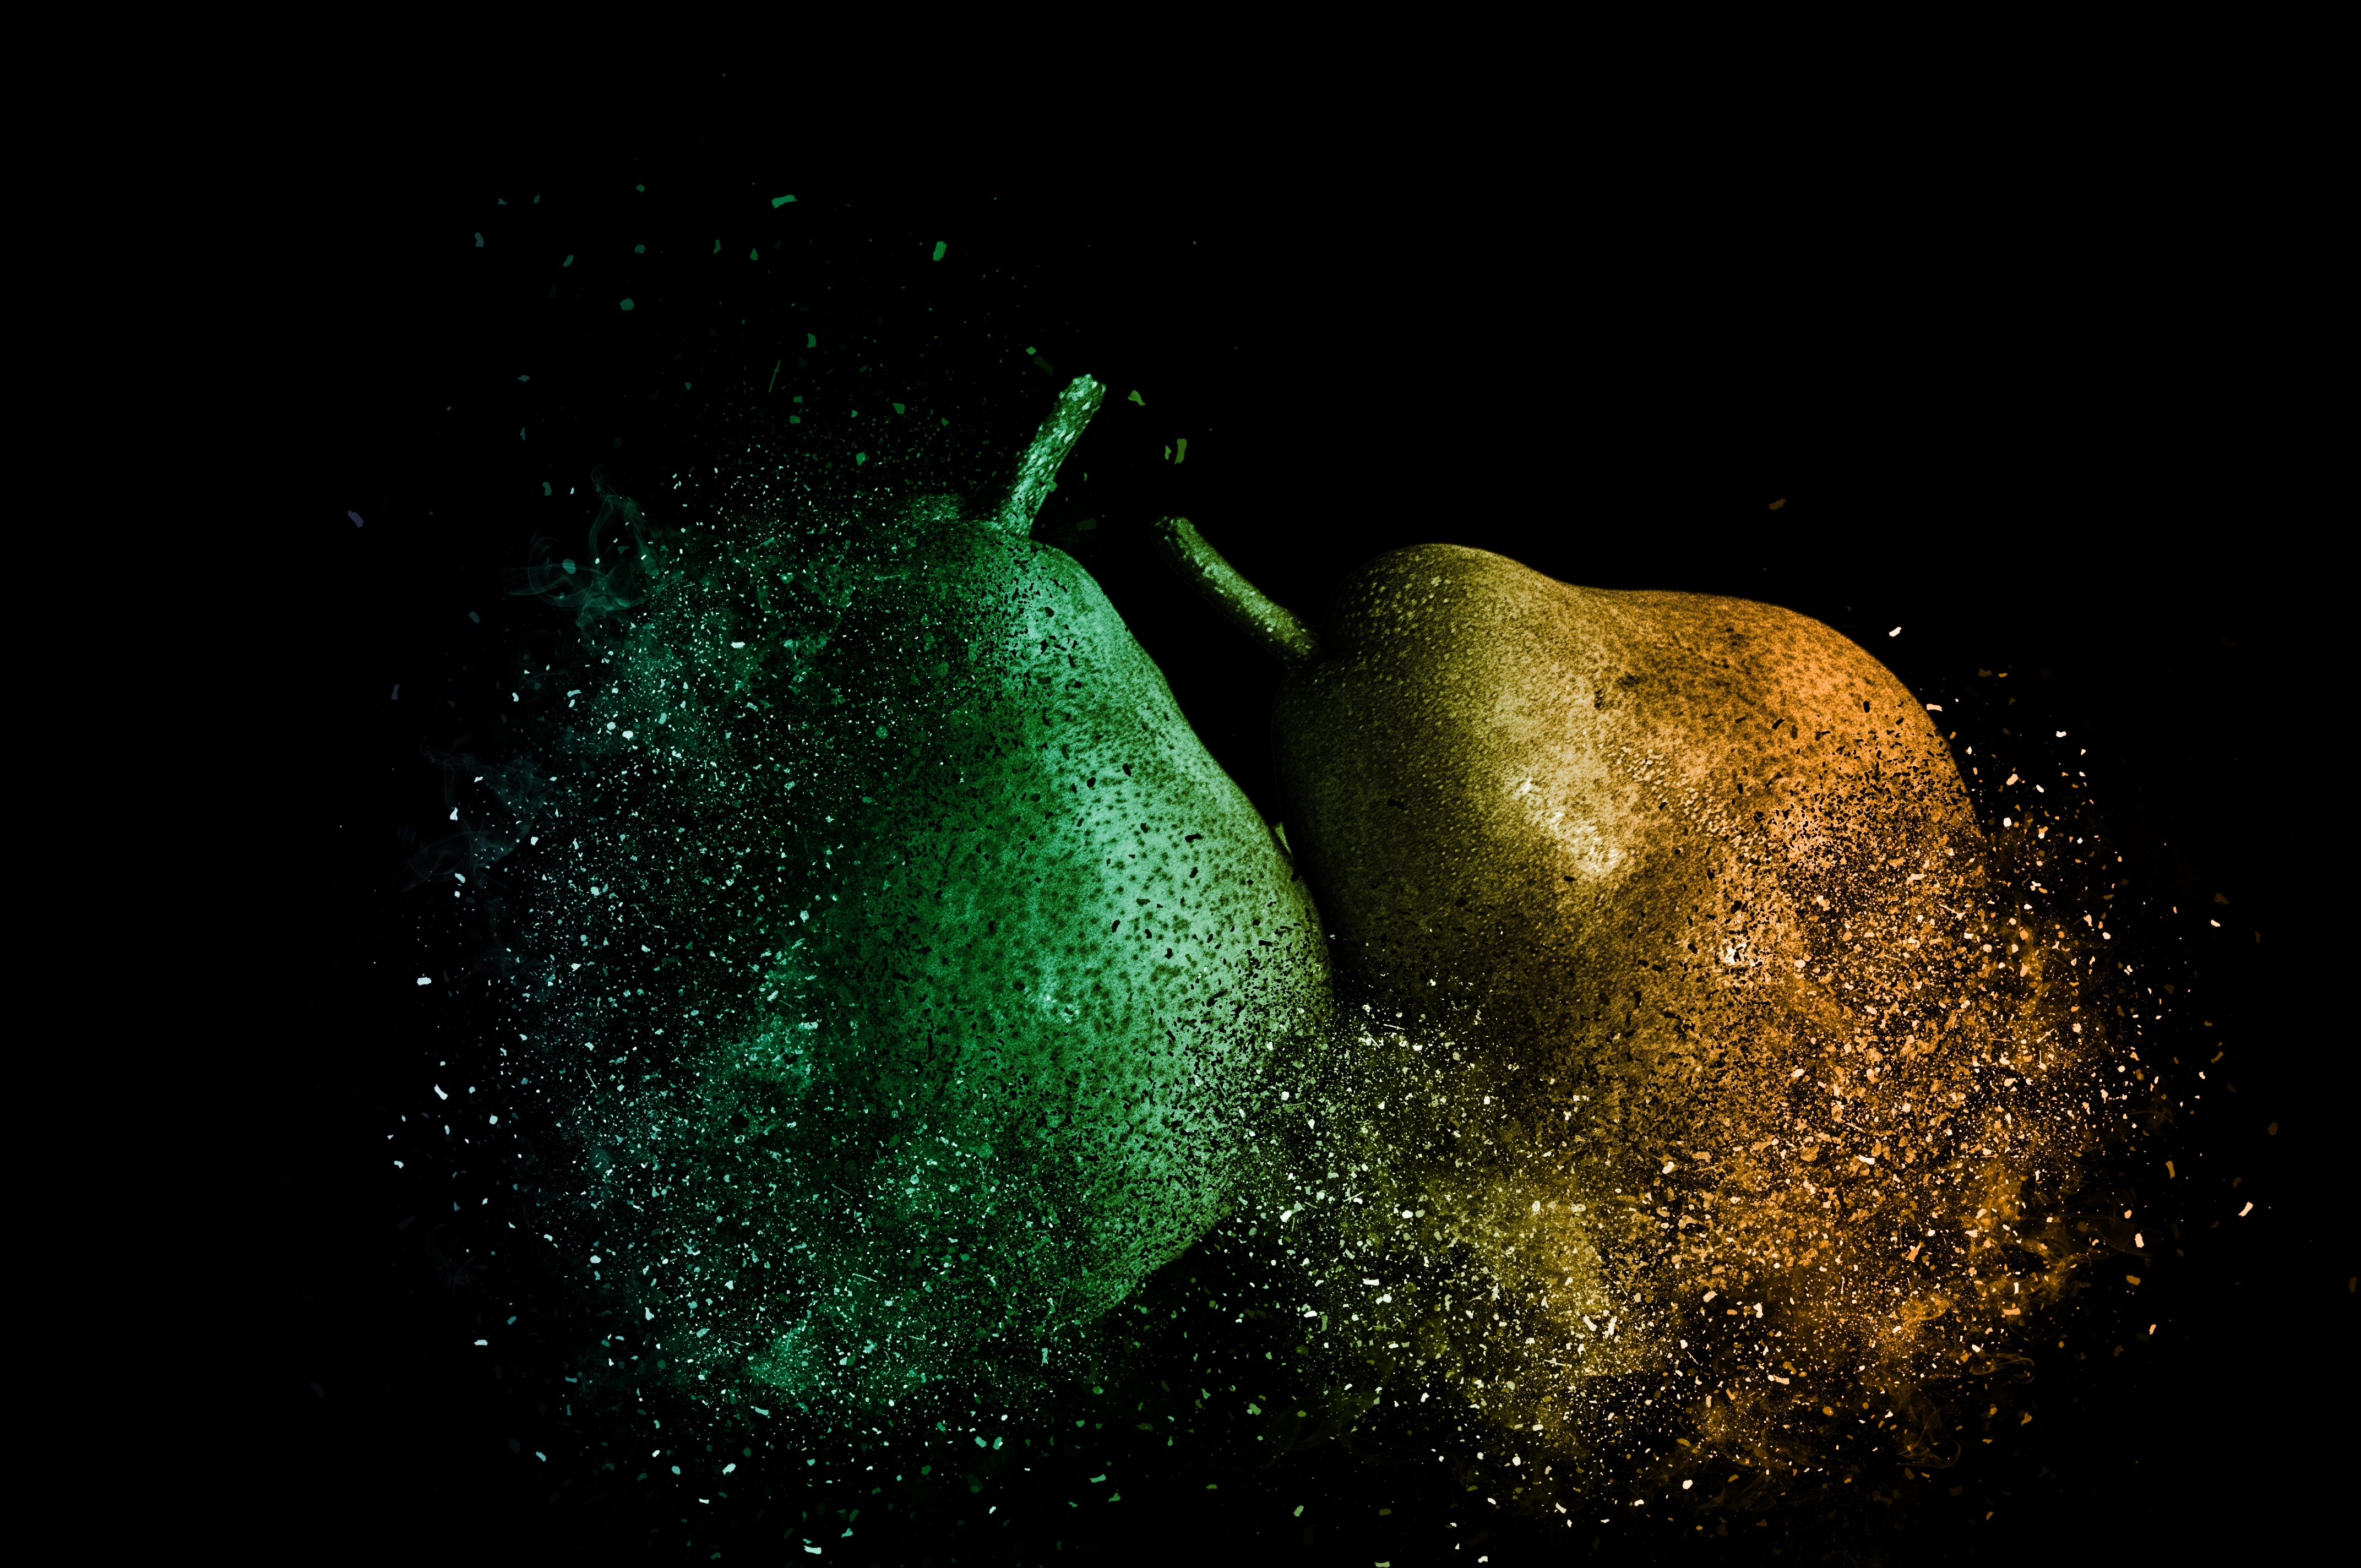 Бесплатное фото Зелёная и жёлтая груша на чёрном фоне с эффектом фотошопа